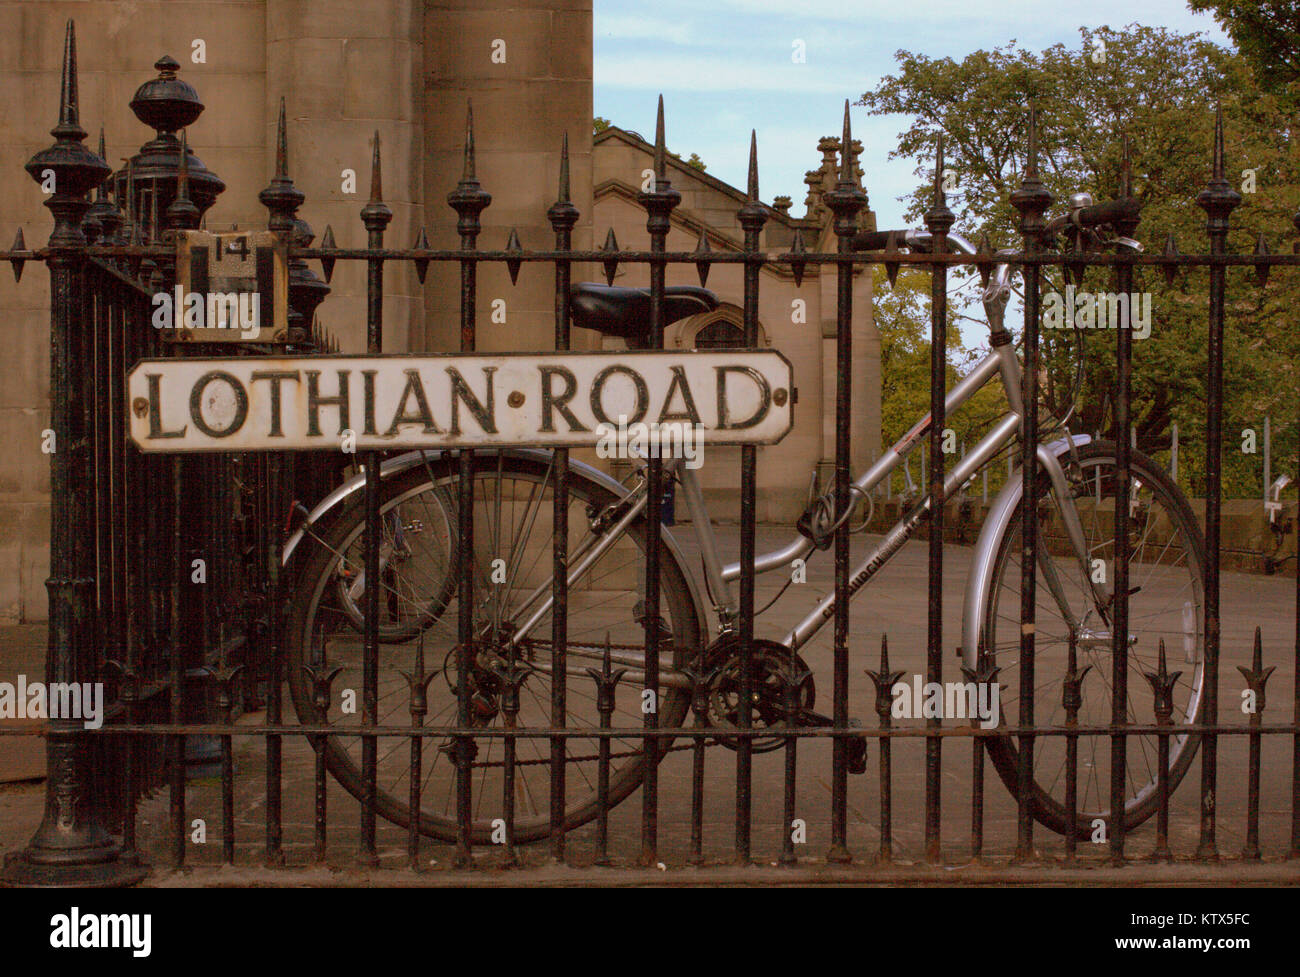 Fahrrad zu Geländer mit straßenschild Für die Lothian Road, Edinburgh, Vereinigtes Königreich gesichert Stockfoto